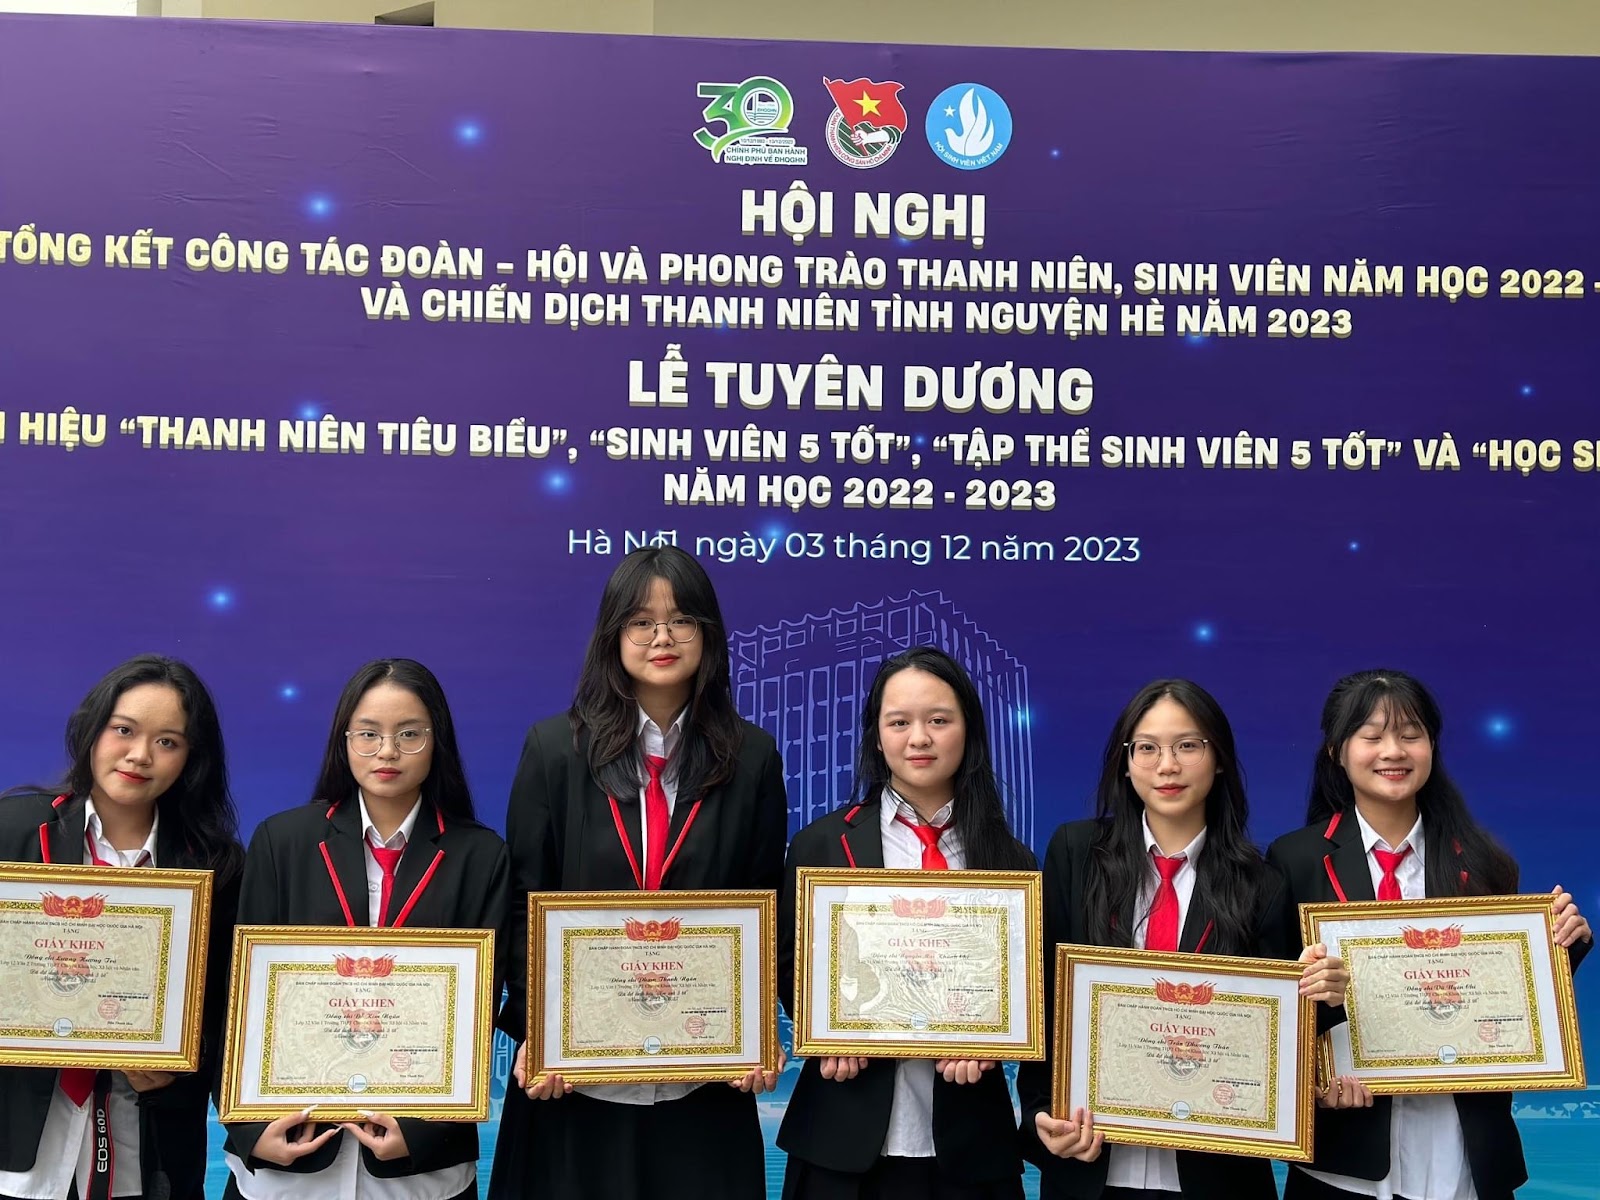 Học sinh trường THPT Chuyên KHXH&NV đạt danh hiệu “Học sinh 3 tốt” cấp ĐHQGHN năm học 2022 - 2023